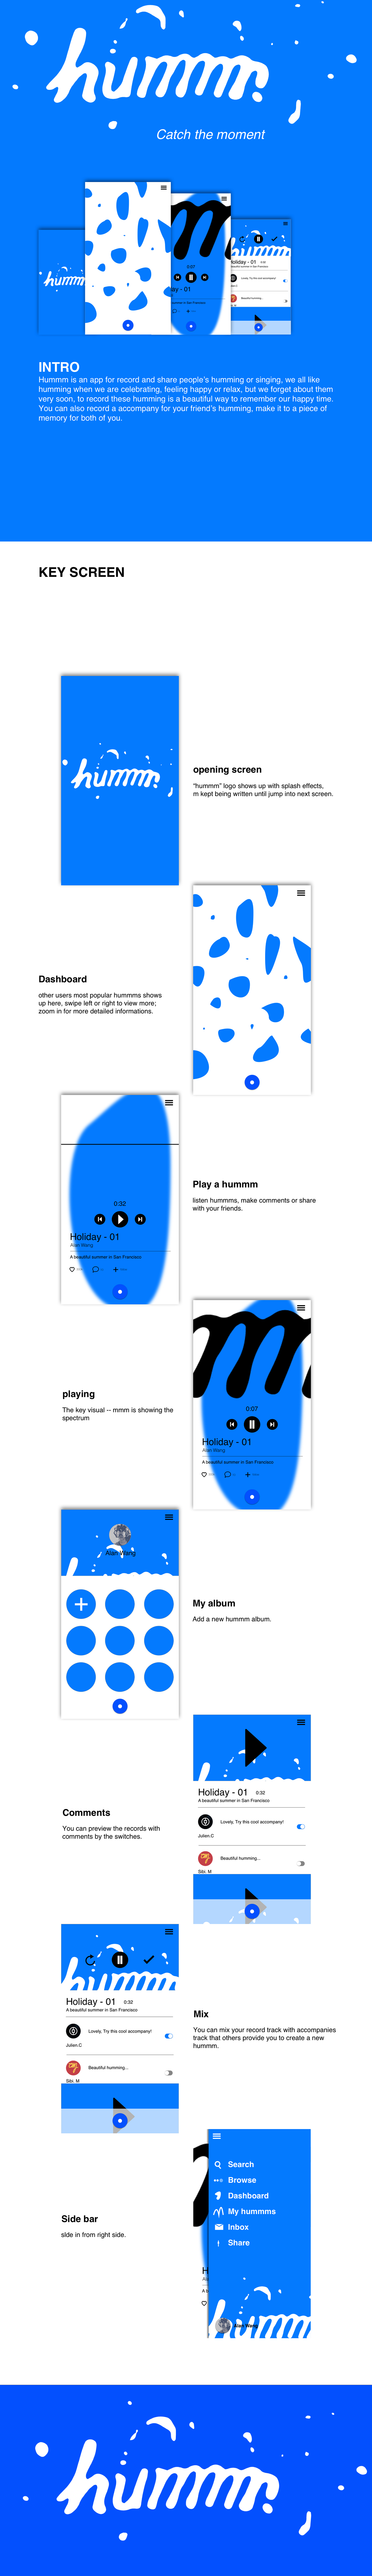 conceptual design Mobile app social media interactive design user experience